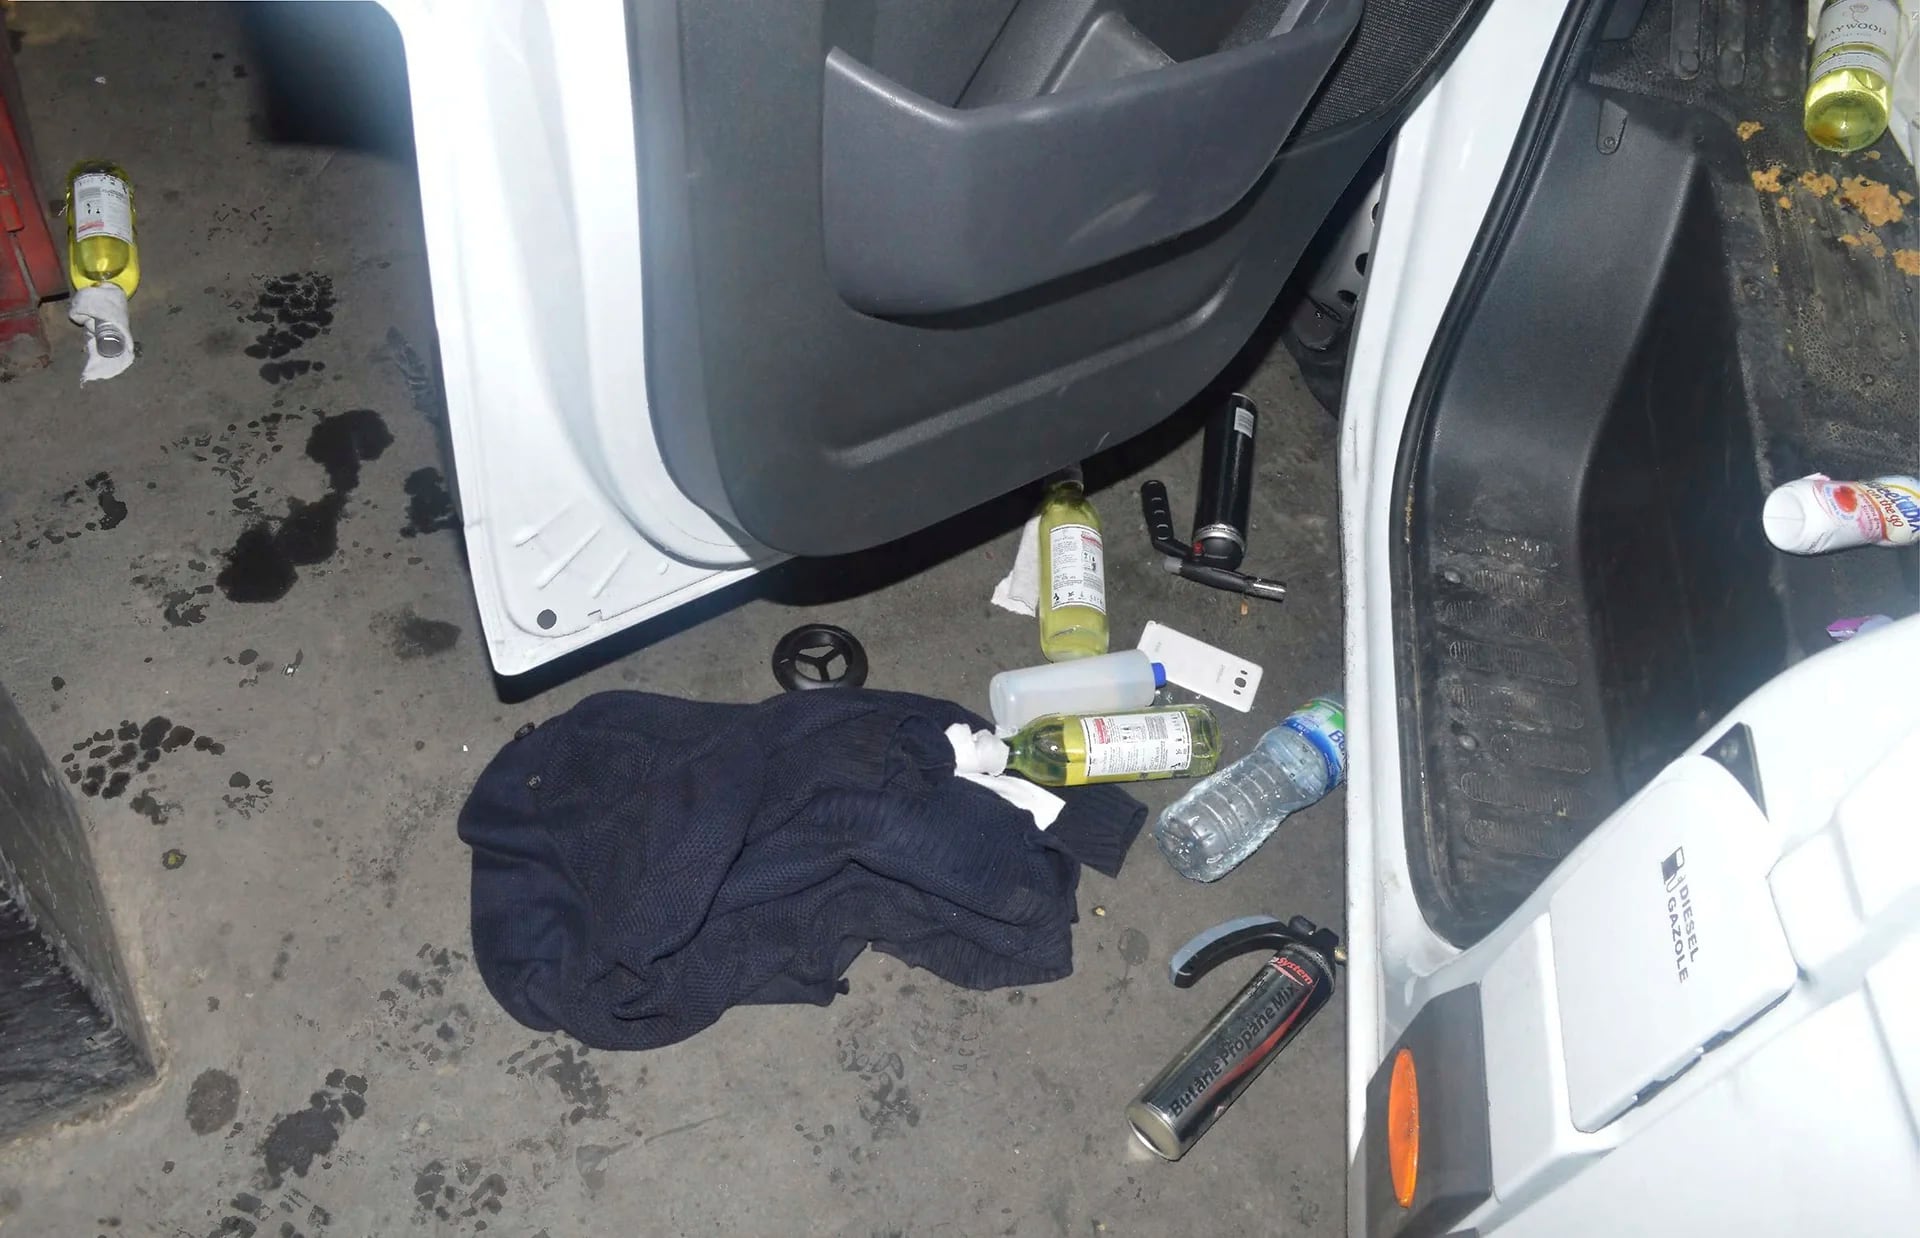 La policía halló botellas de vino en la camioneta. Se cree que iban a ser usadas como bombas incendiarias